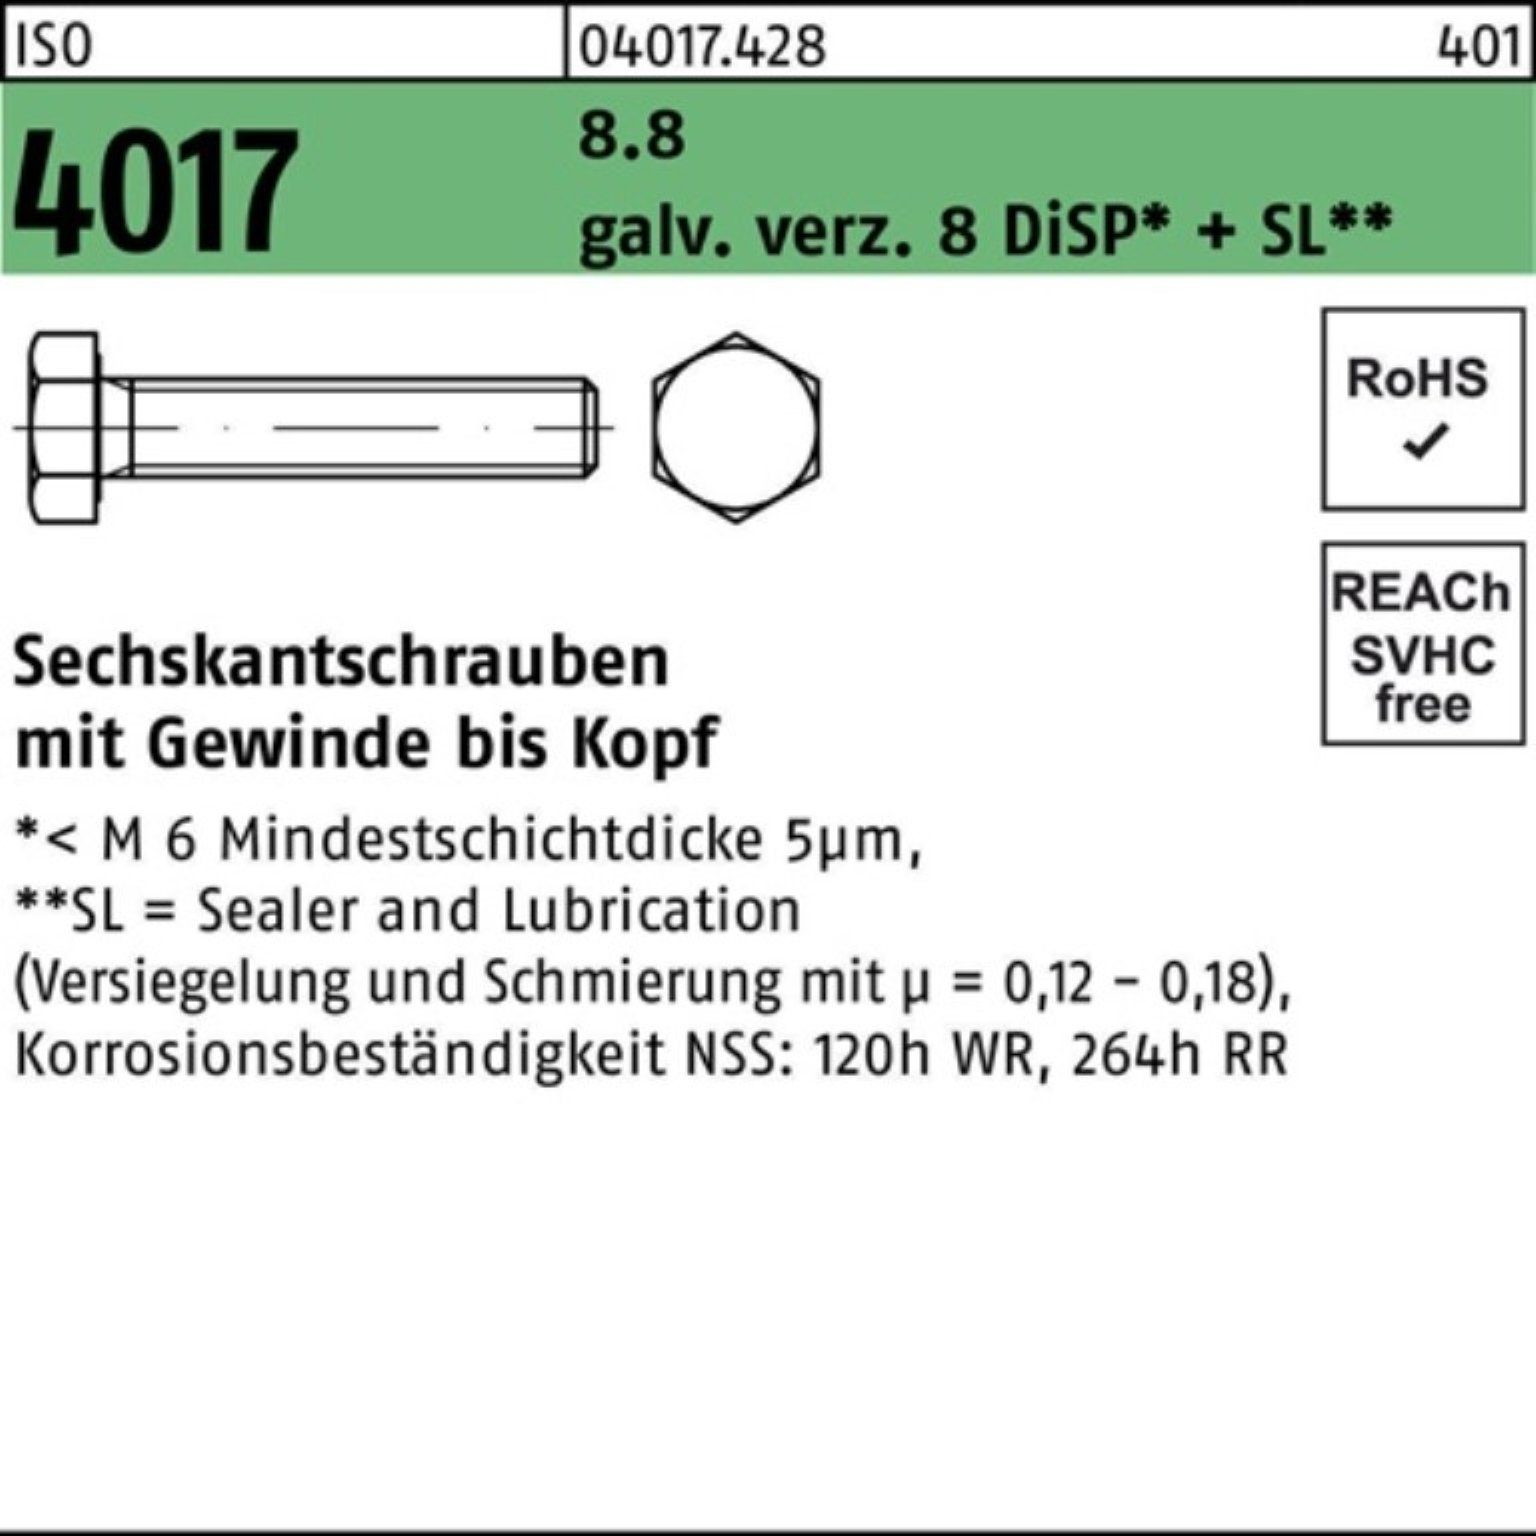 Pack DiSP 8 VG Bufab Sechskantschraube ISO galv.verz. 8.8 200er 28 Sechskantschraube M10x 4017